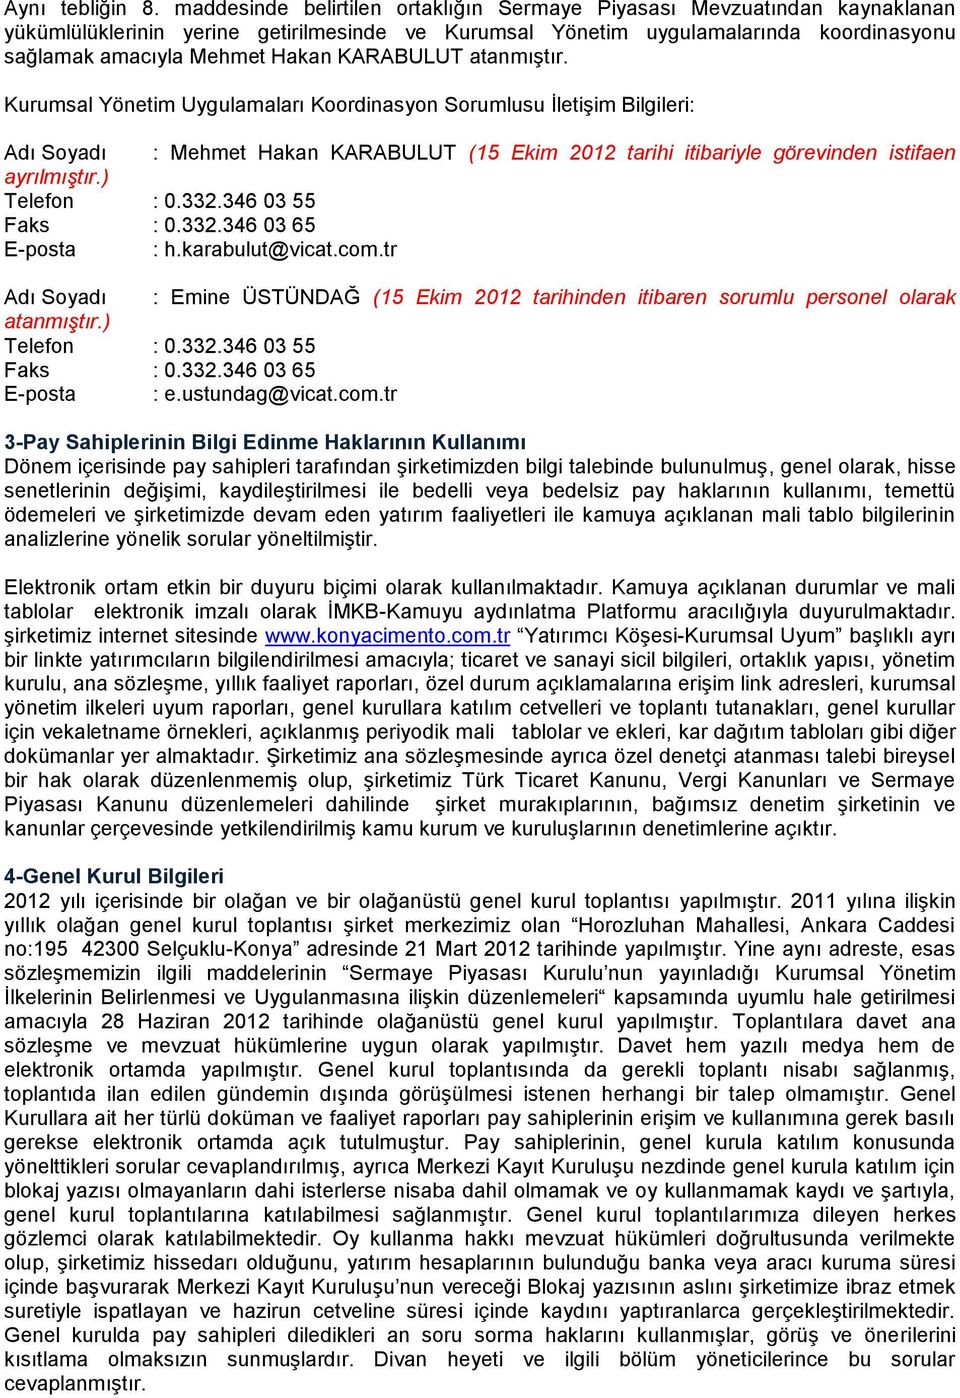 KARABULUT atanmıştır. Kurumsal Yönetim Uygulamaları Koordinasyon Sorumlusu İletişim Bilgileri: Adı Soyadı : Mehmet Hakan KARABULUT (15 Ekim 2012 tarihi itibariyle görevinden istifaen ayrılmıştır.